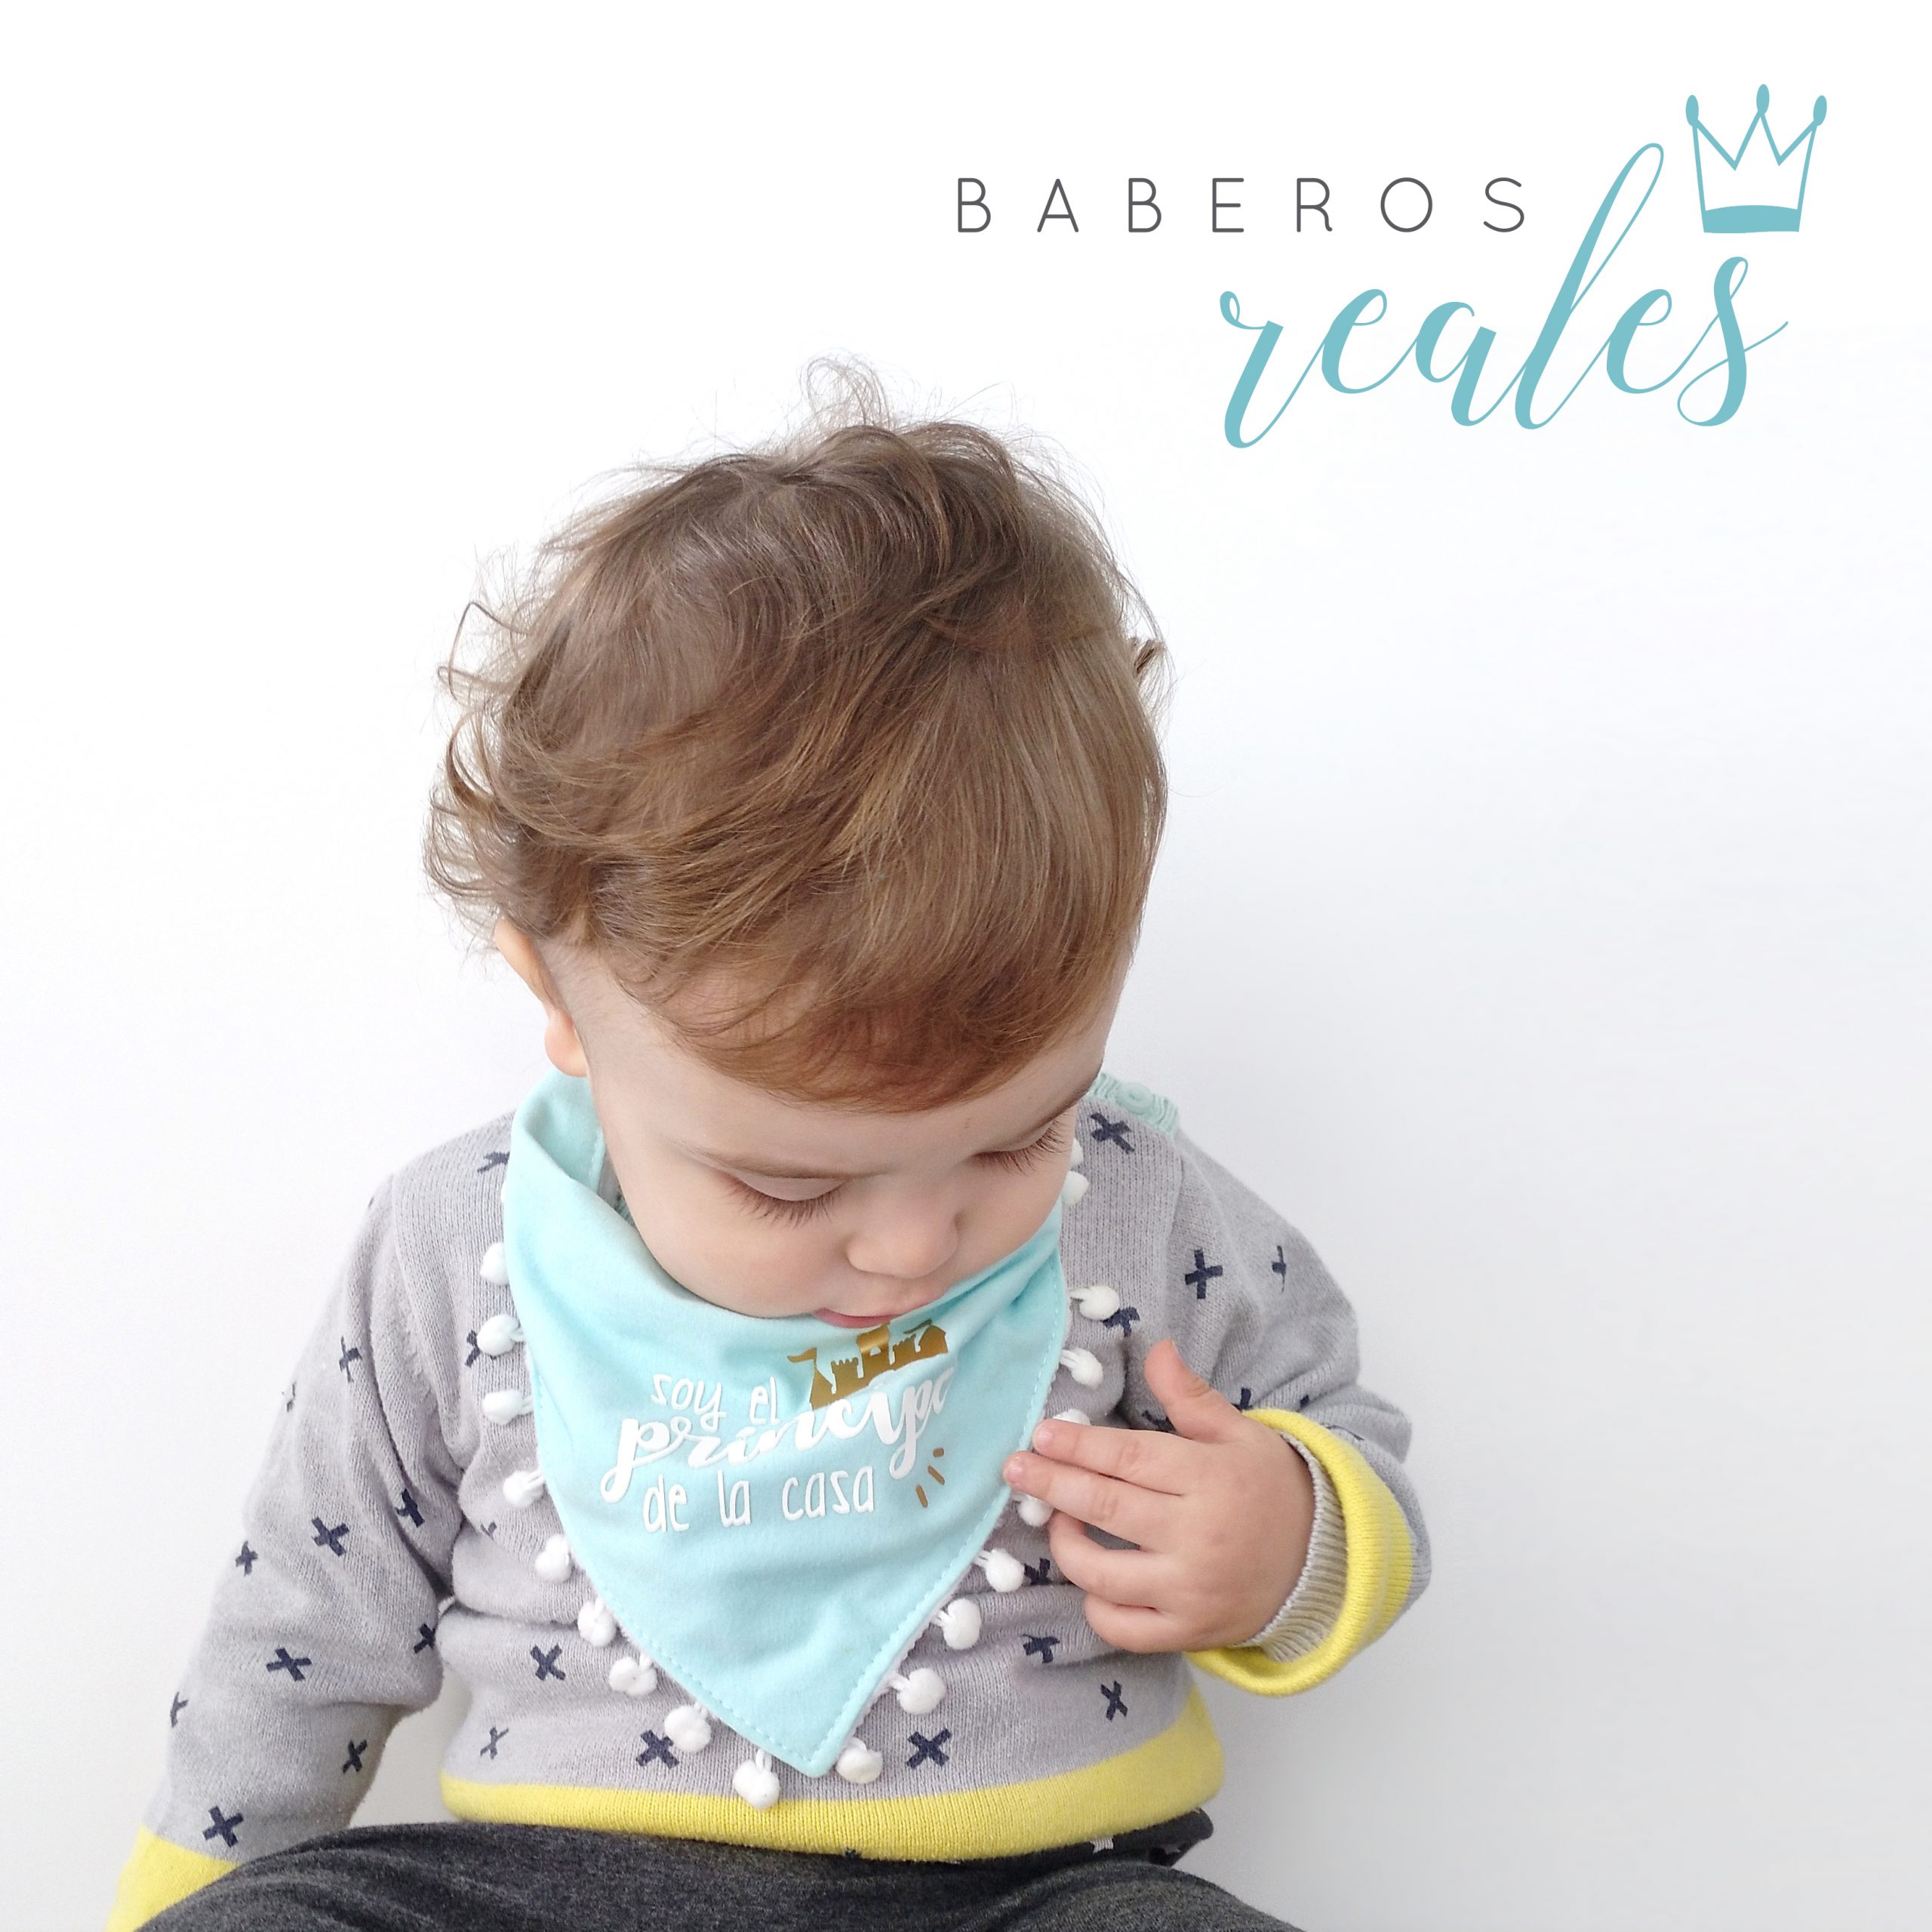 19 baberos bonitos y originales para el bebé